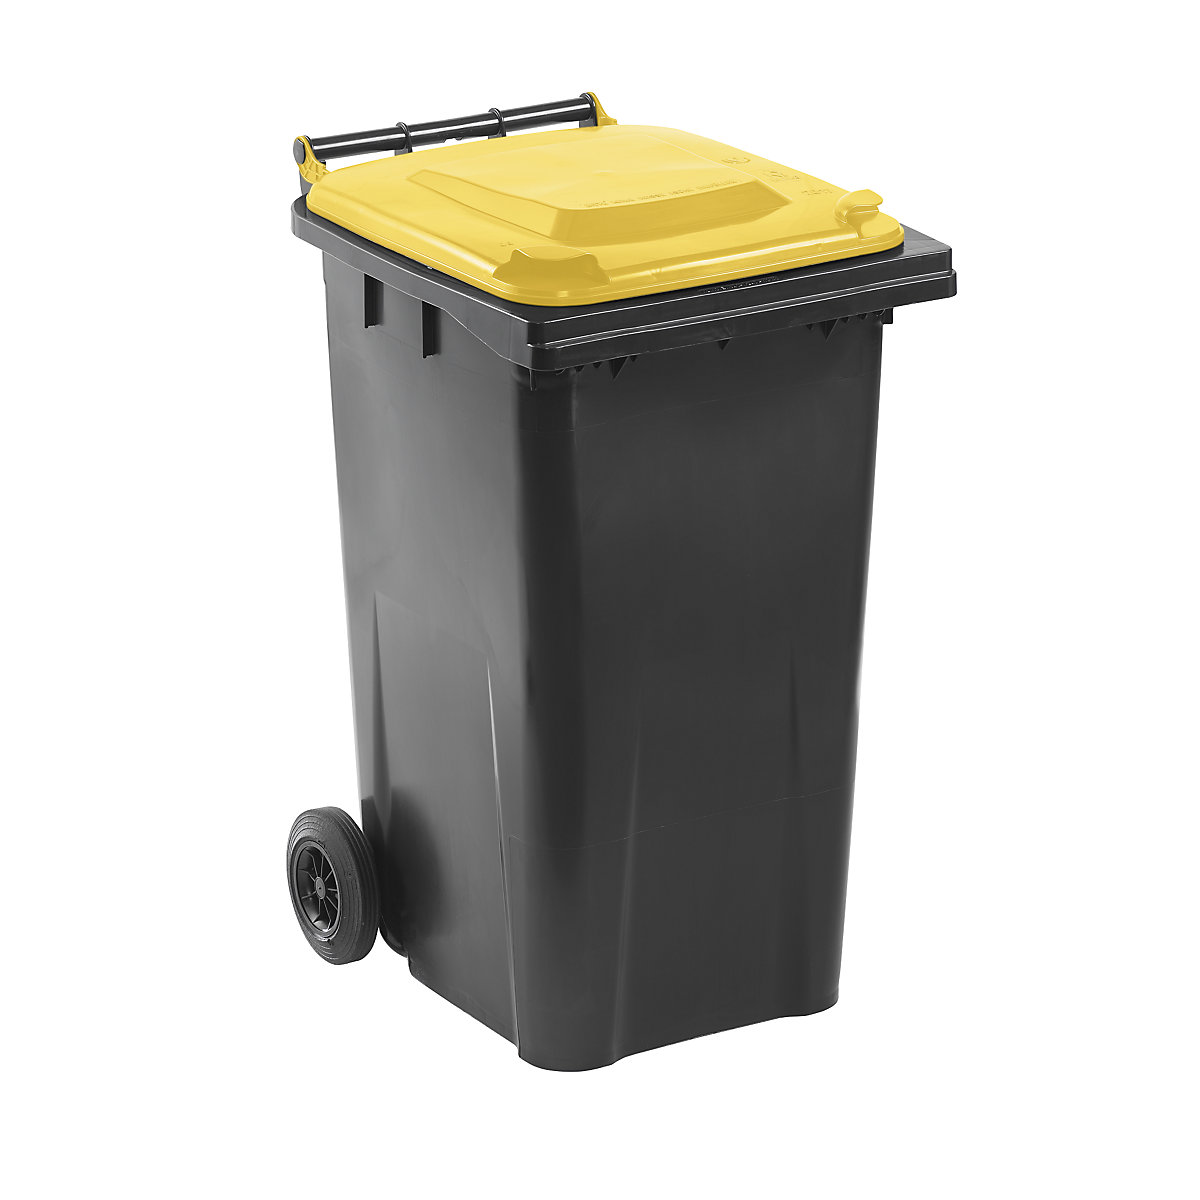 DIN EN 840 szabvány szerinti hulladékgyűjtő, űrtartalom 240 l, szé x ma x mé 580 x 1100 x 740 mm, antracit színben, sárga fedéllel